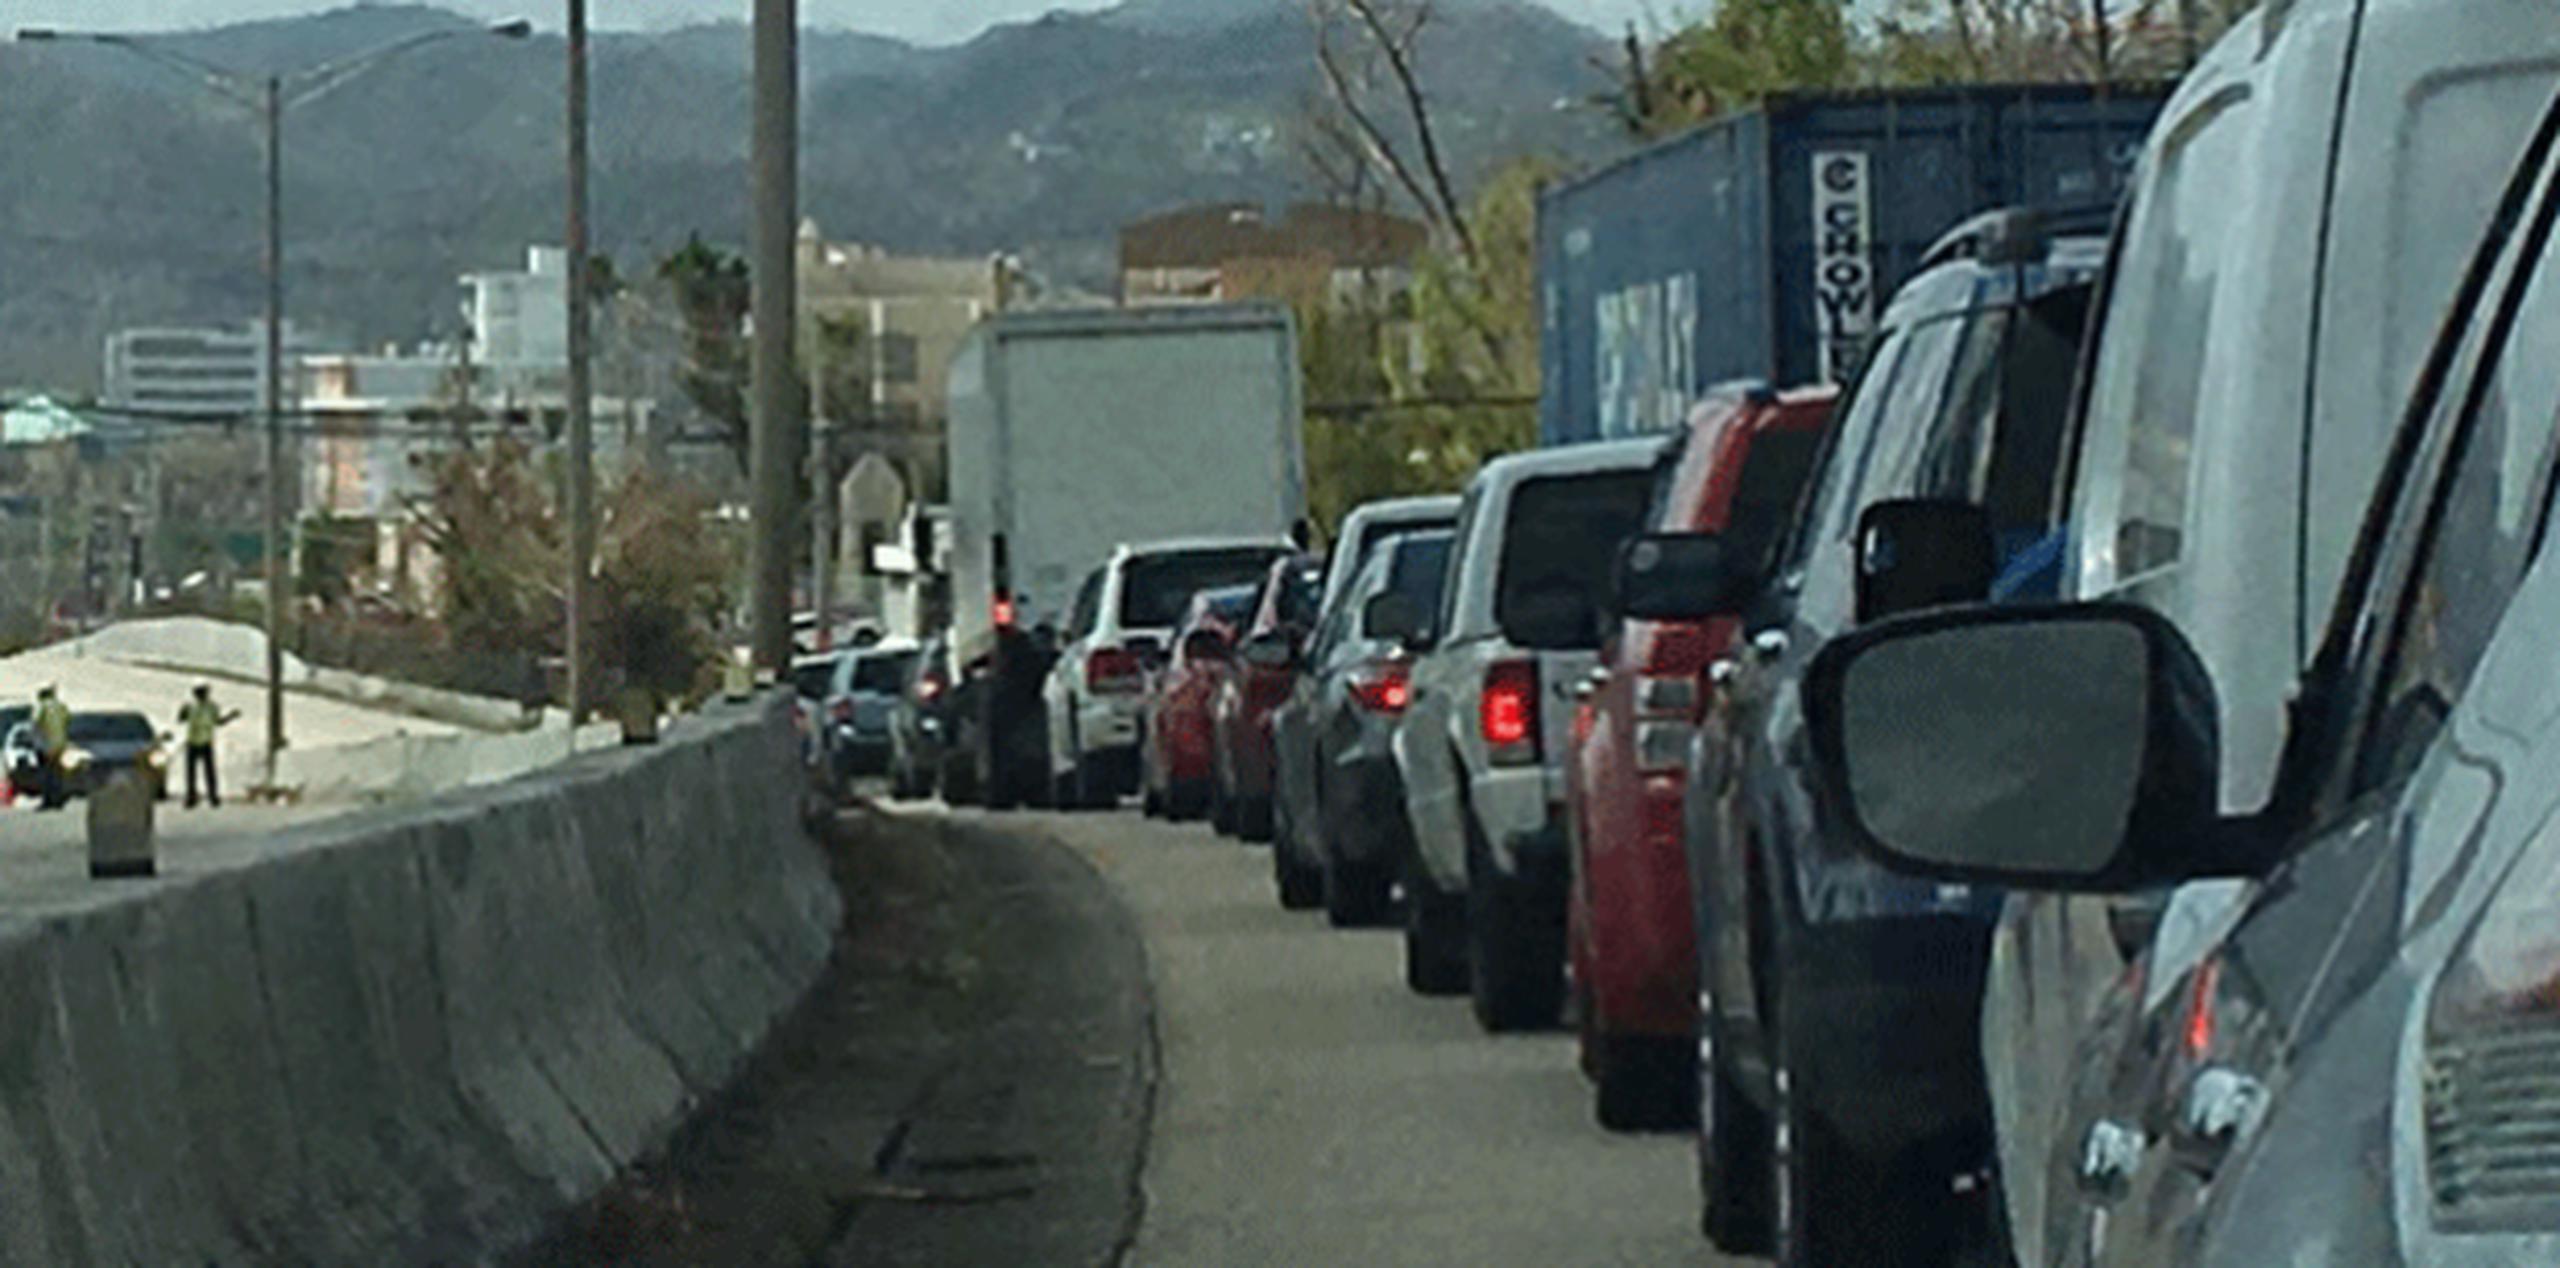 Para trasladarse de San Juan hacia Carolina y viceversa, los automovilistas pueden tomar como vías alternas el Ramal 8 y la carretera PR-3. (alex.figueroa@gfrmedia.com)